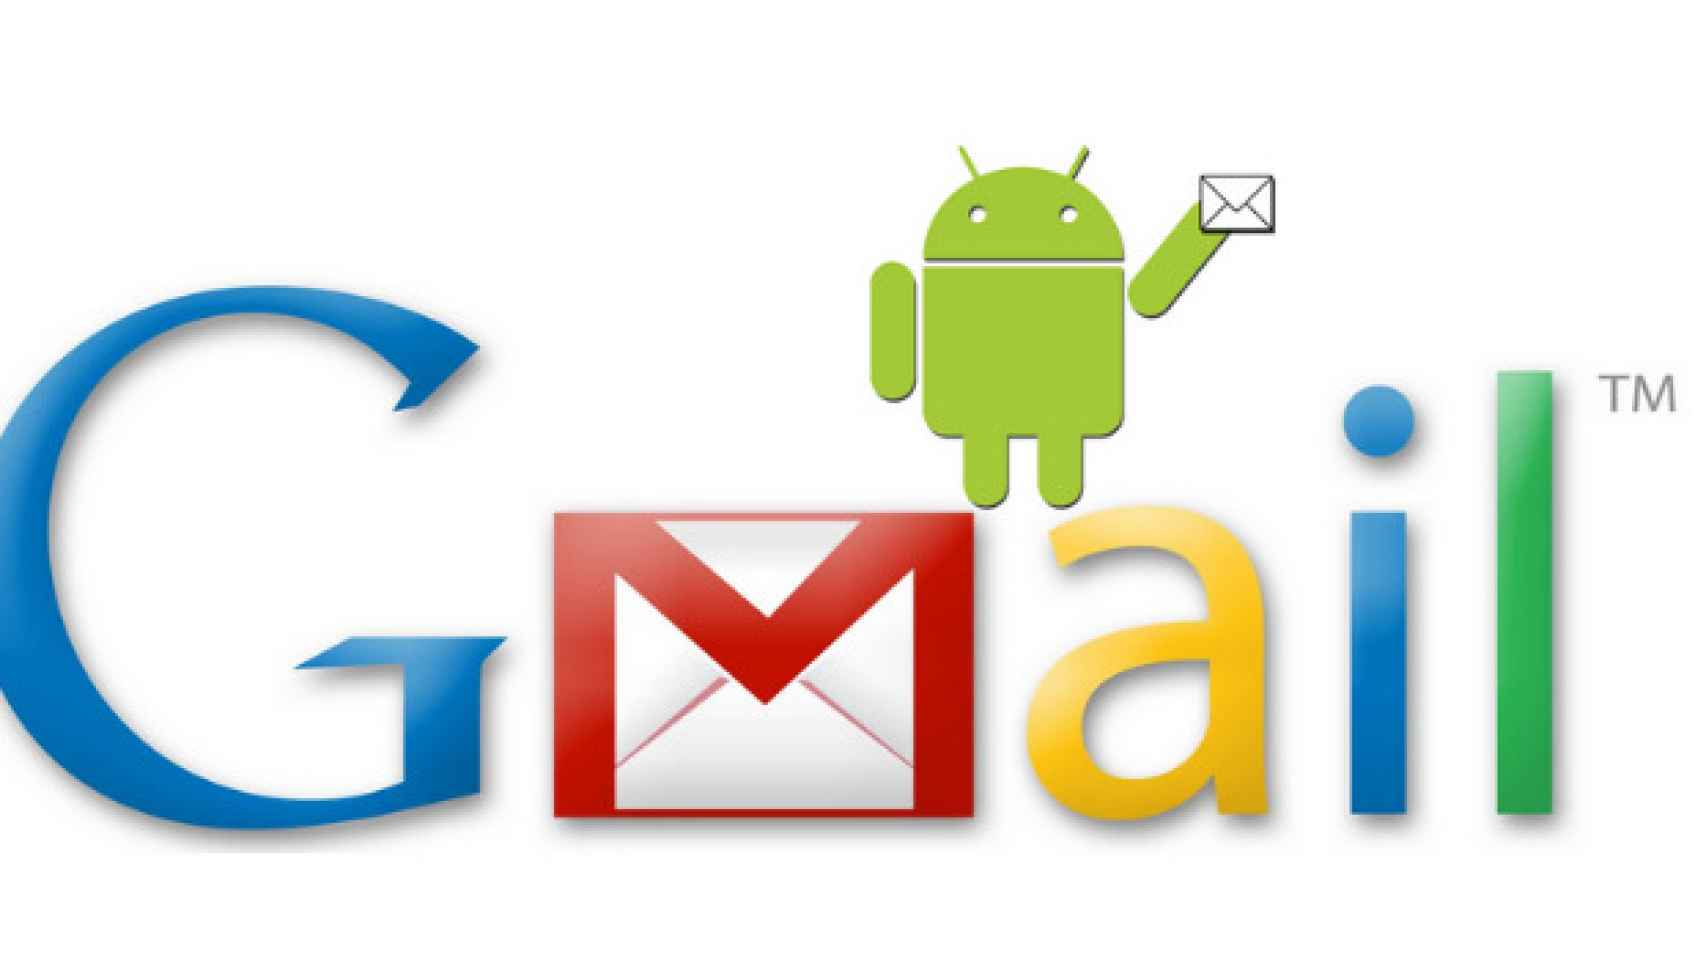 Cómo crear alertas personalizadas en Android para los correos electrónicos de GMail